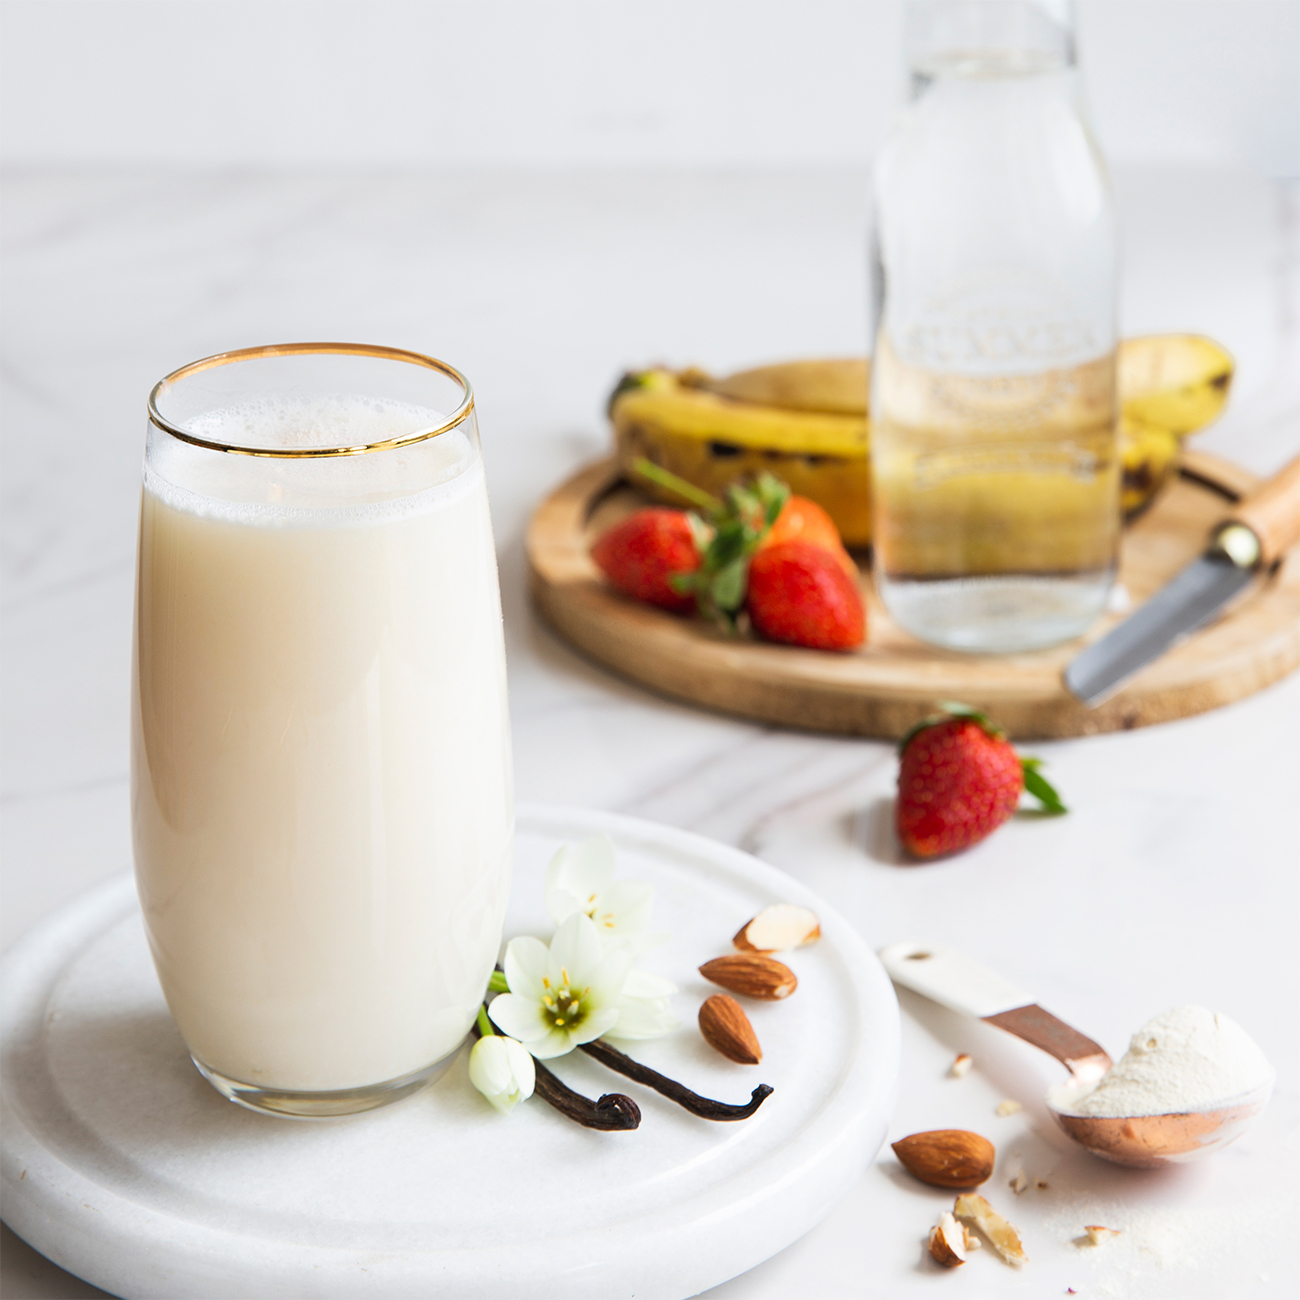 Billede: Herbalife nutrition vanille proteinshake i et glas med frisk frugt og mandler